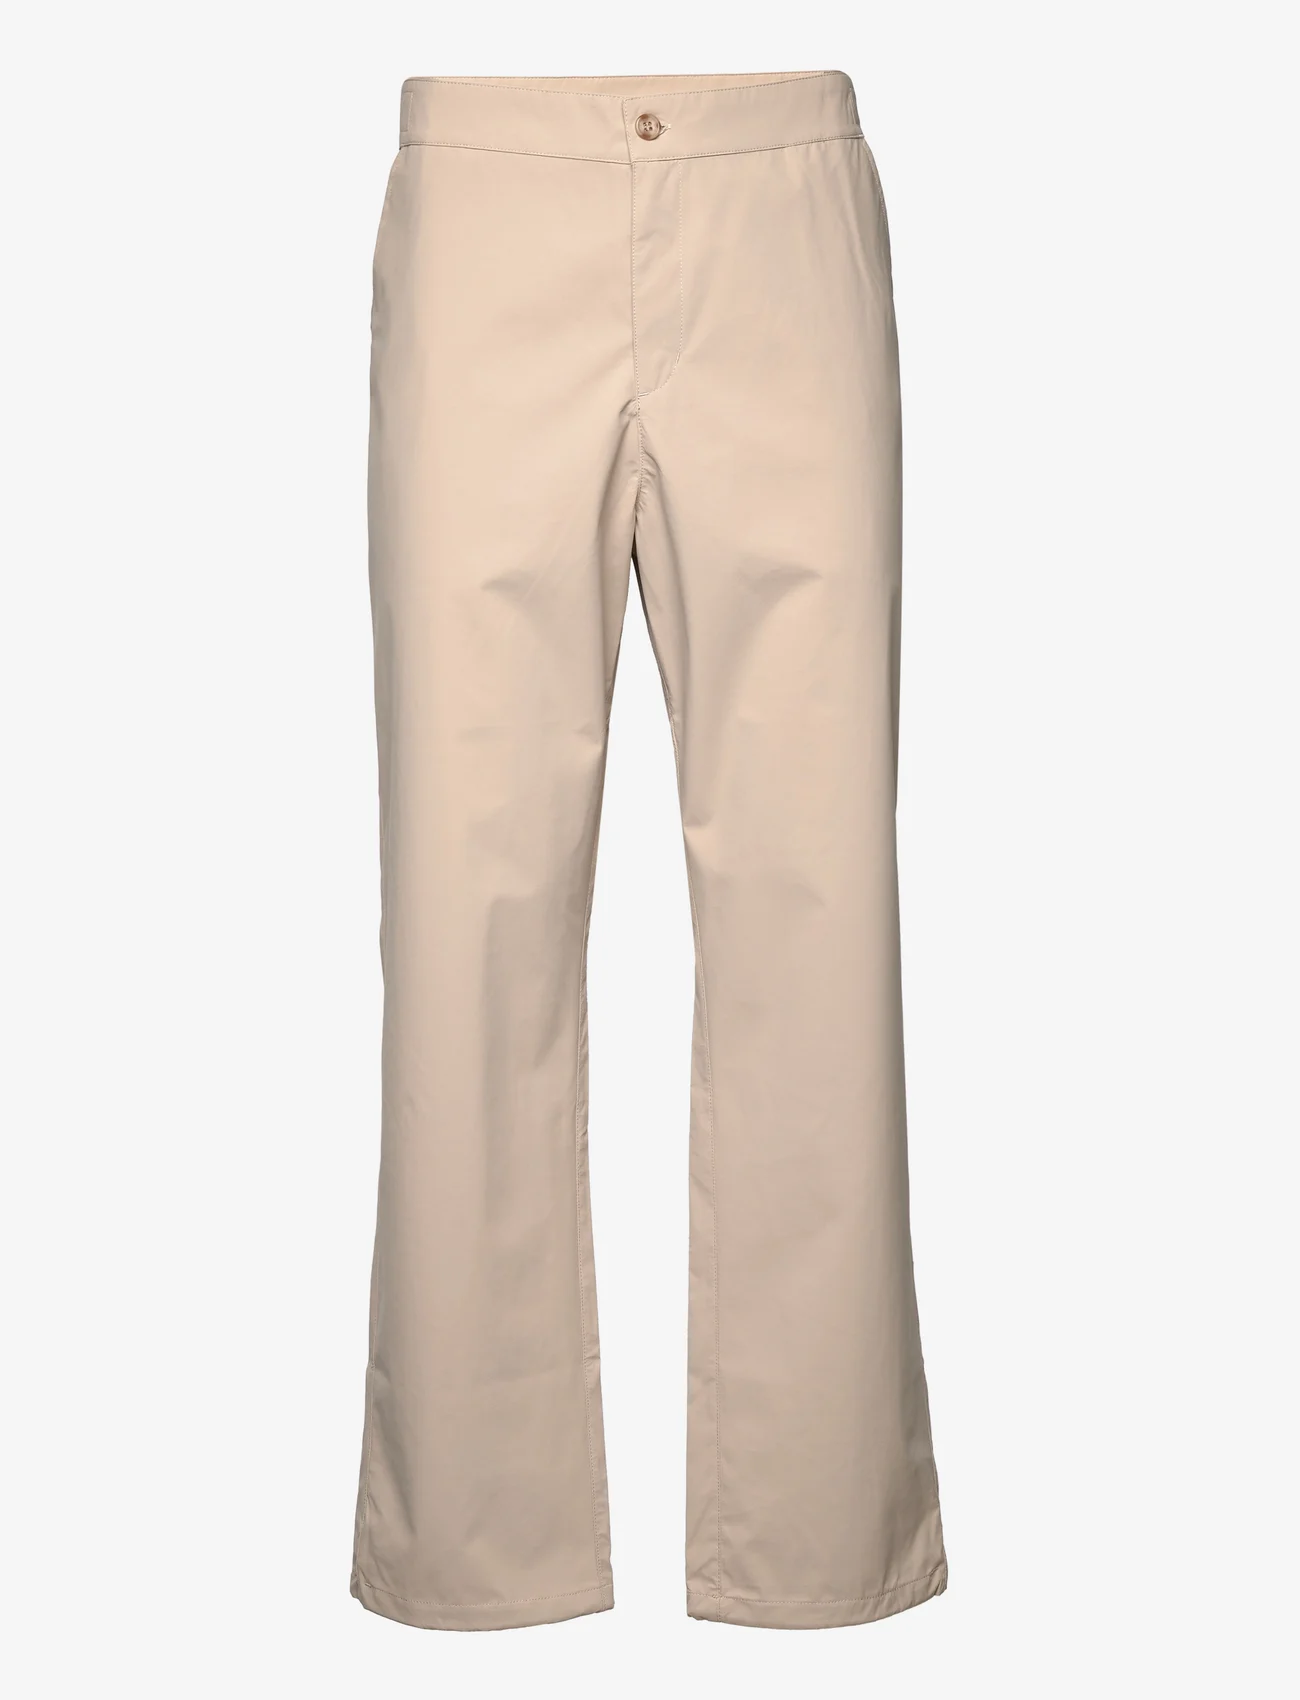 Makia - Kuura 3L pants - chino stila bikses - humus - 0